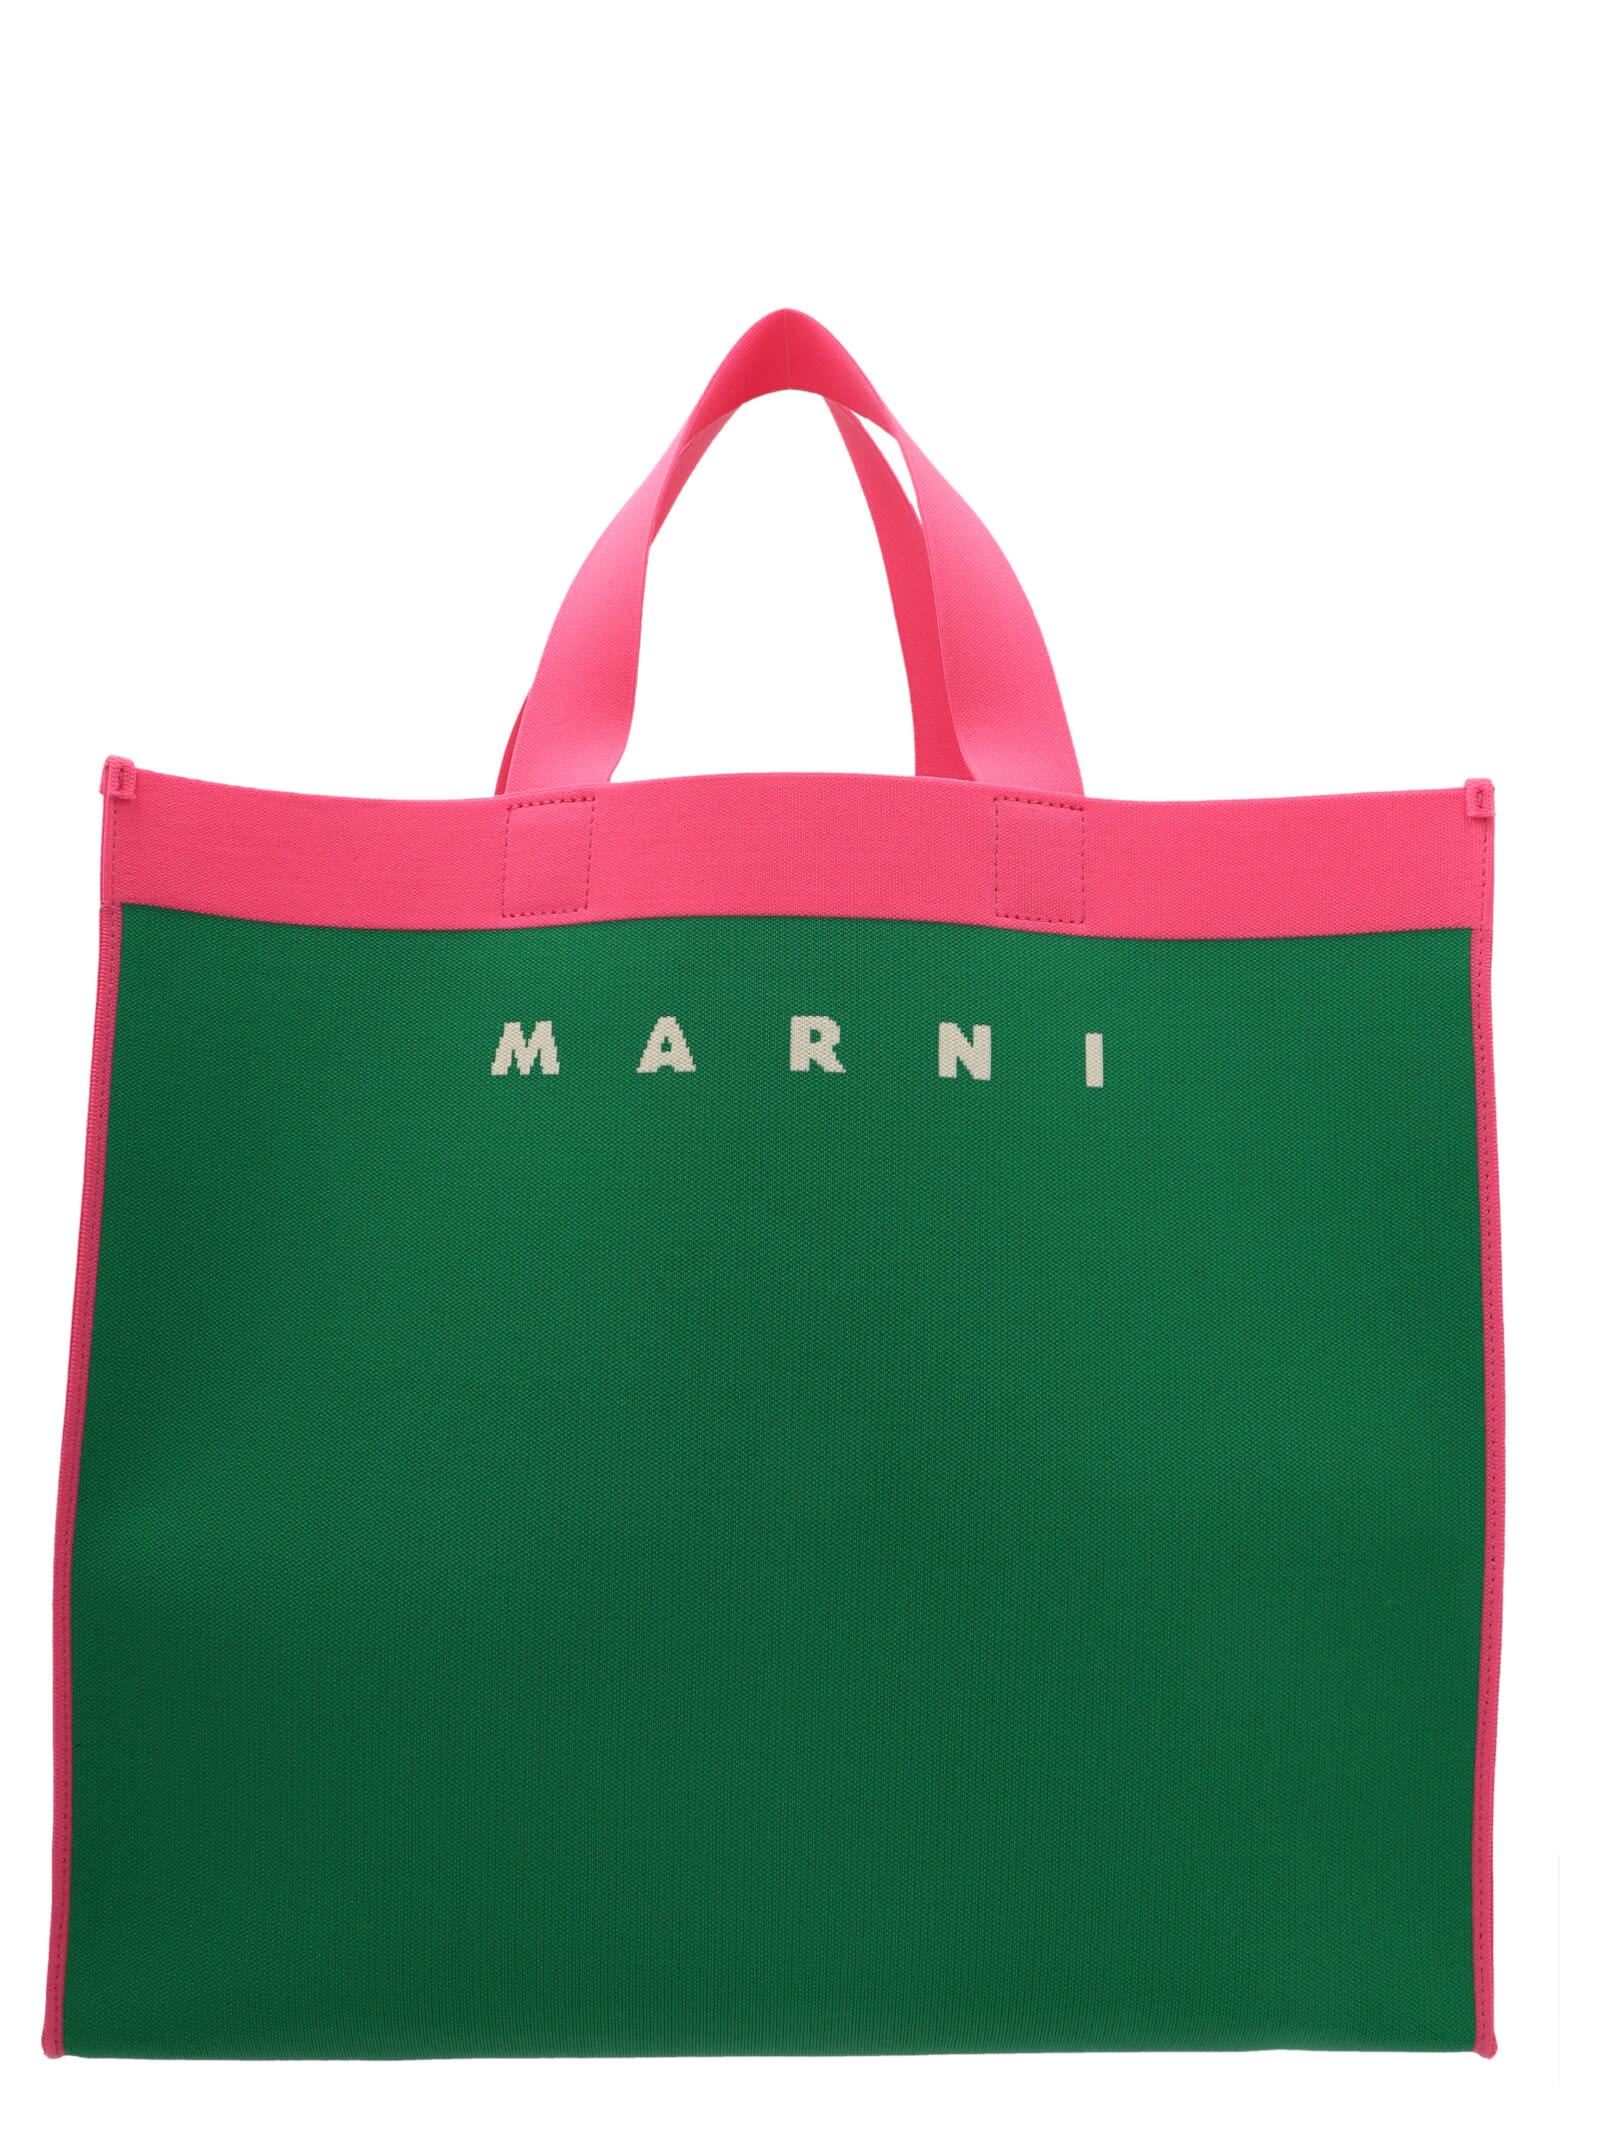 Marni Two-color Shopping Bag